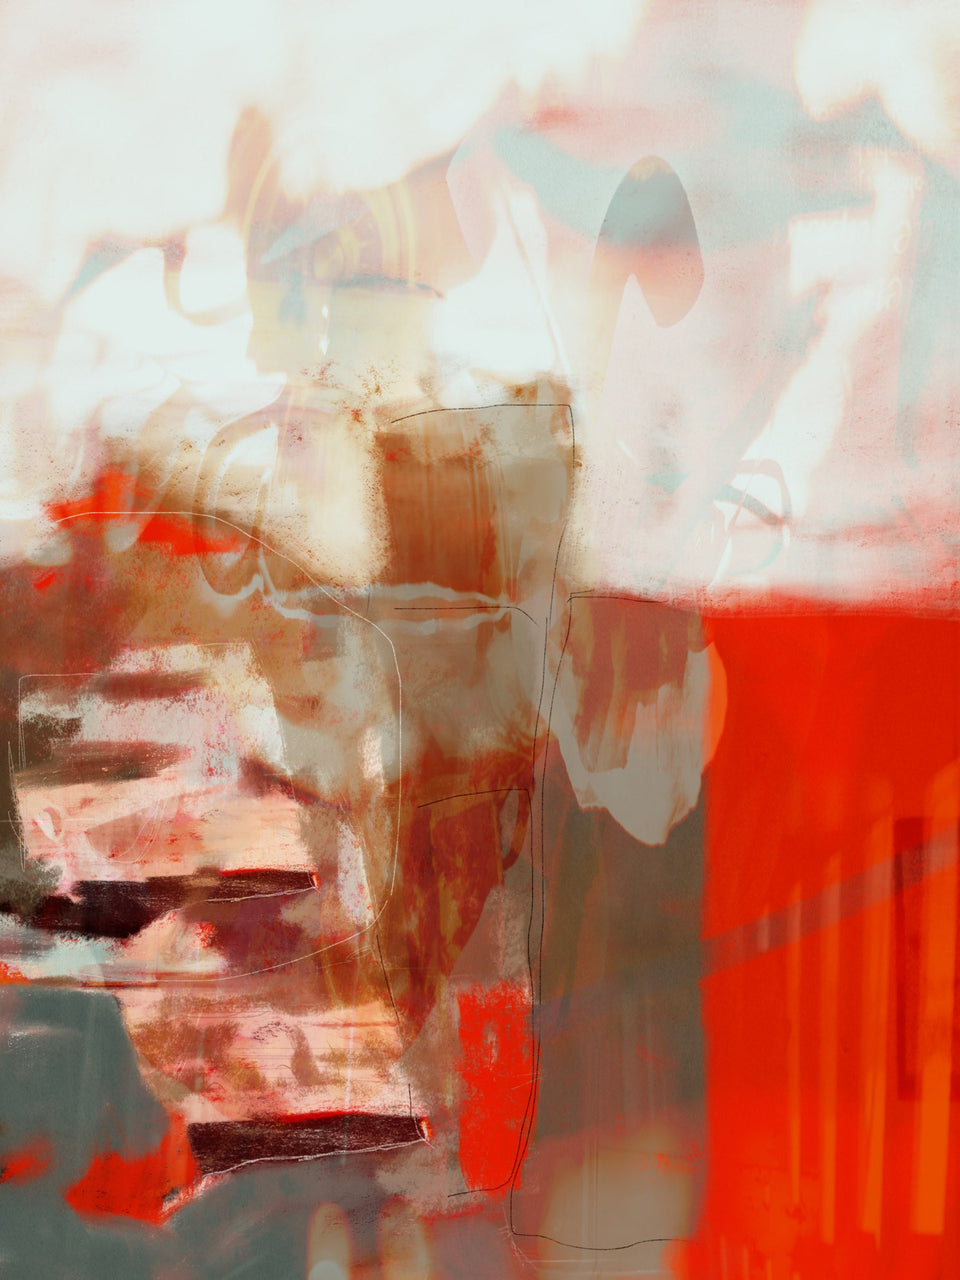  Potion magique 2 - peinture abstraite orange grise - Œuvres d'art  artiste peintre Octave Pixel  galerie TACT Art abstrait & contemporain